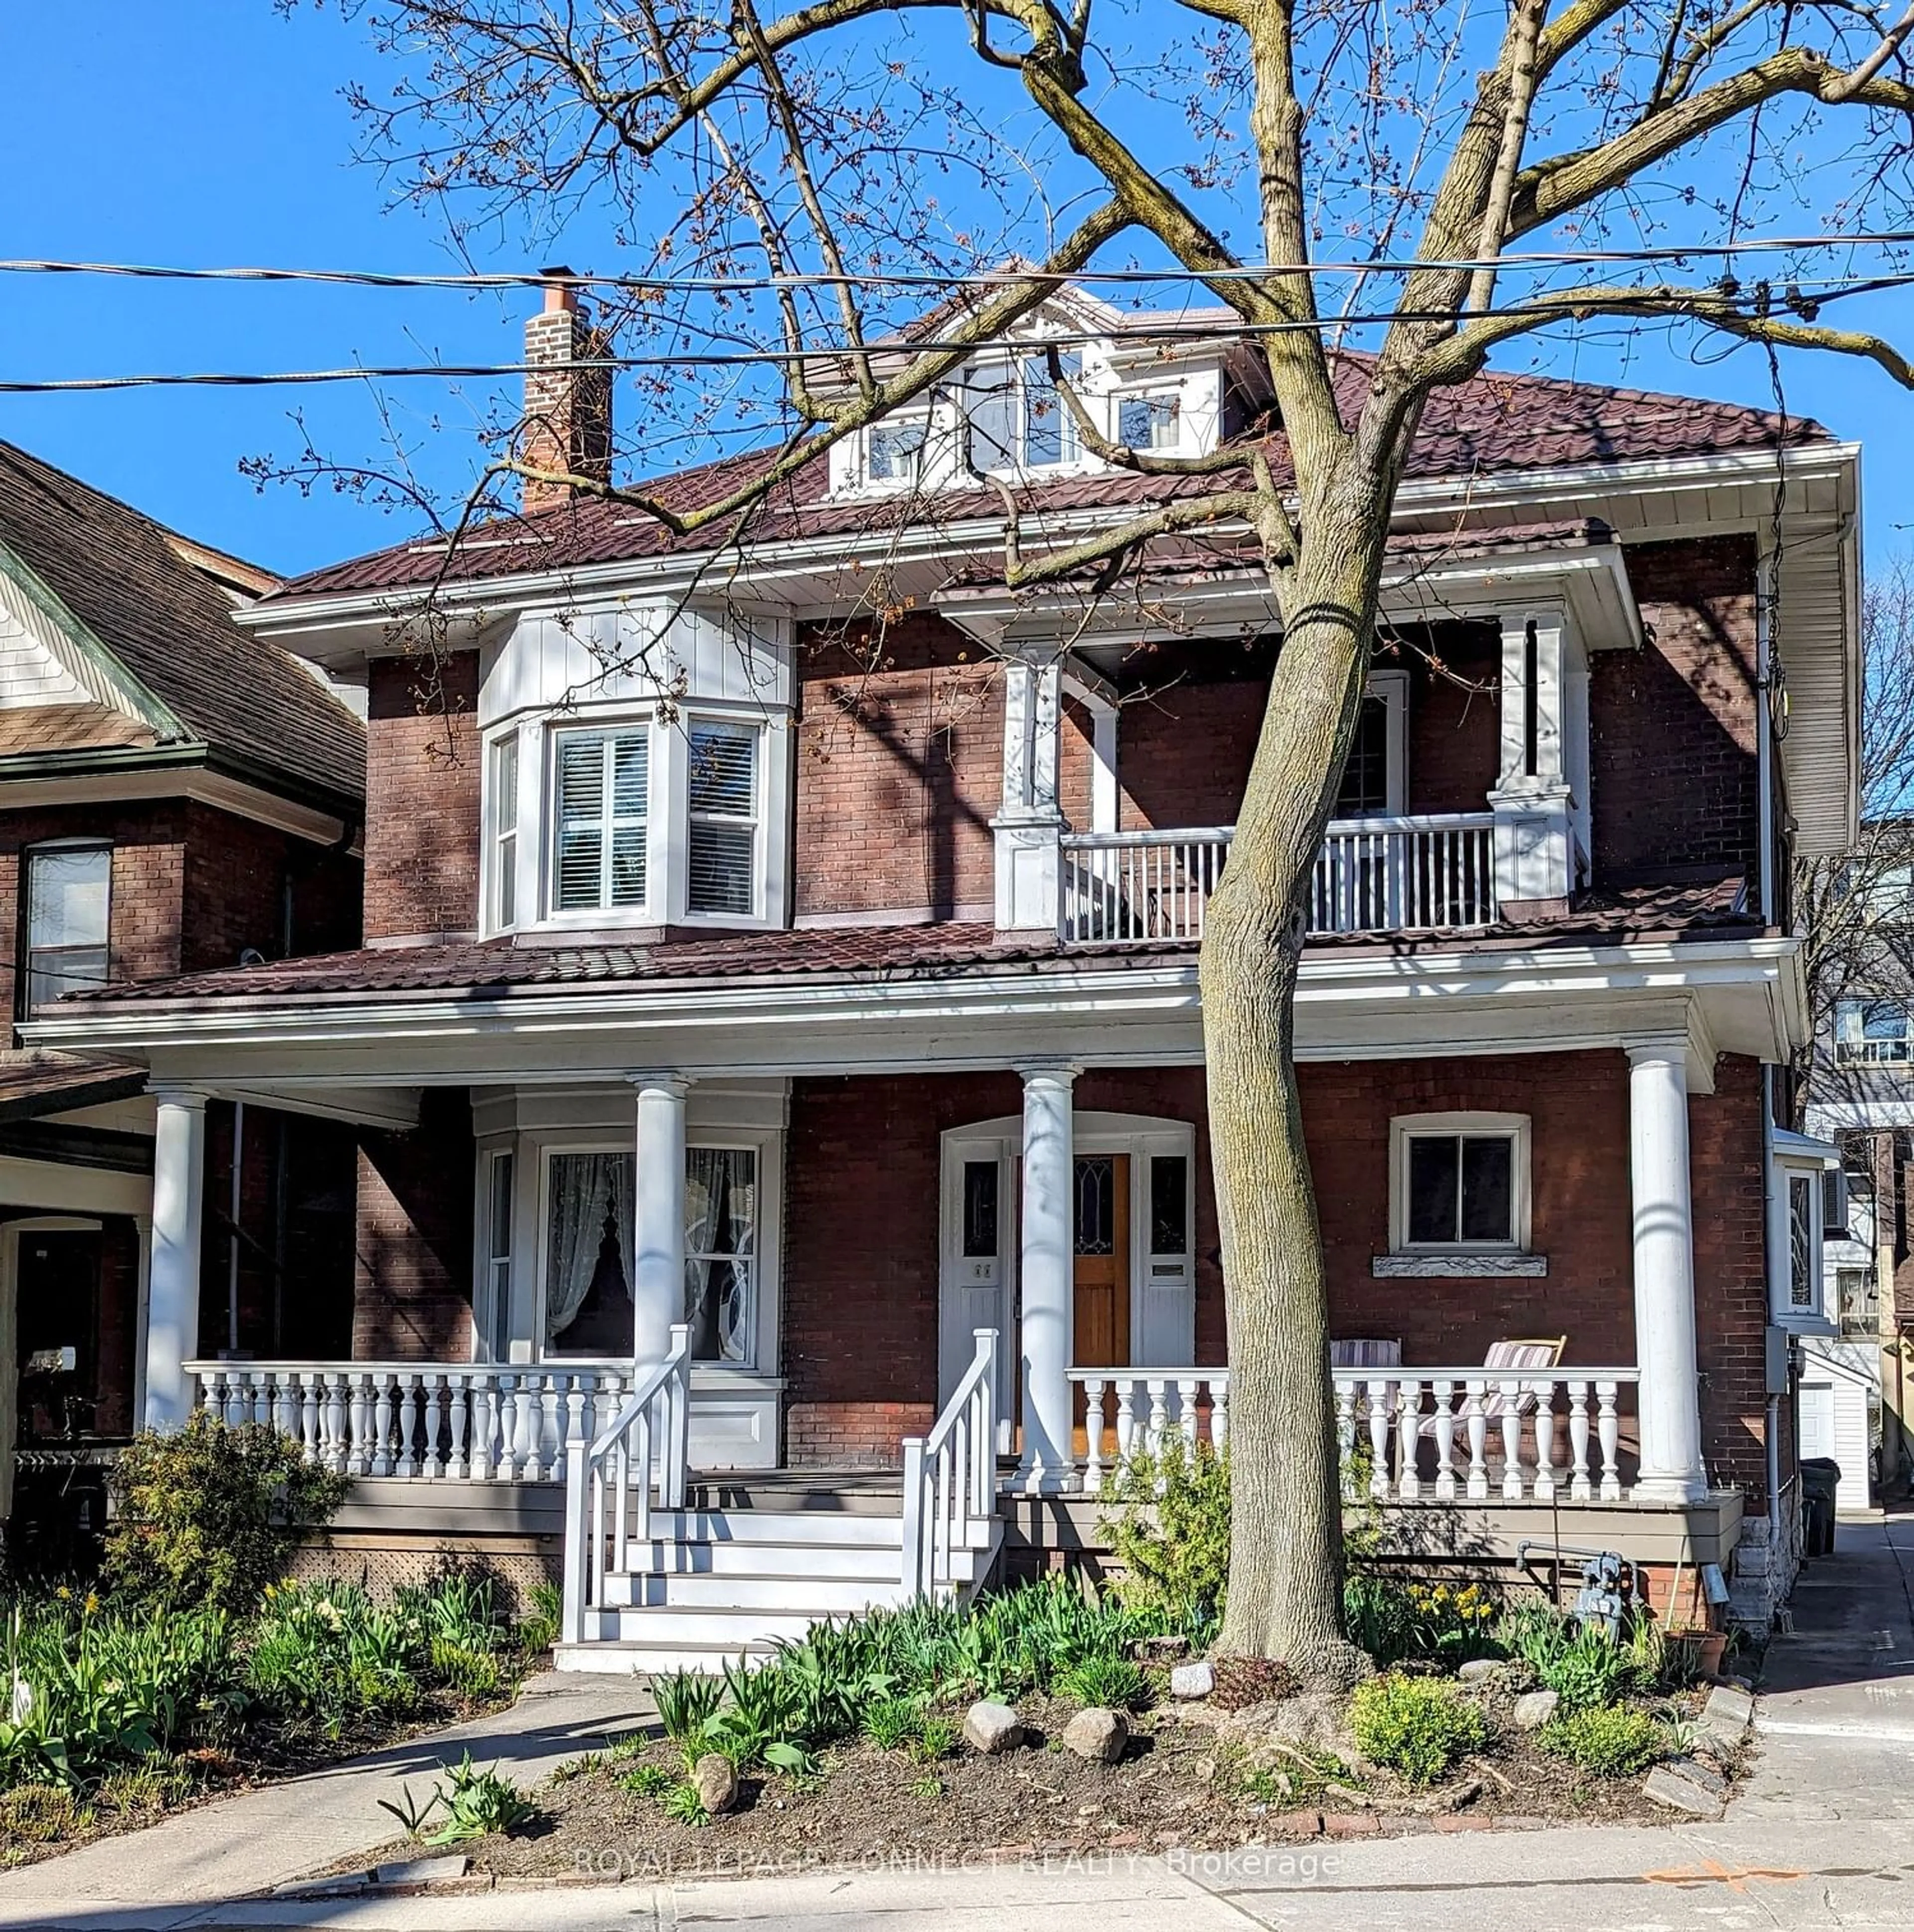 Home with brick exterior material for 149 Springhurst Ave, Toronto Ontario M6K 1B9